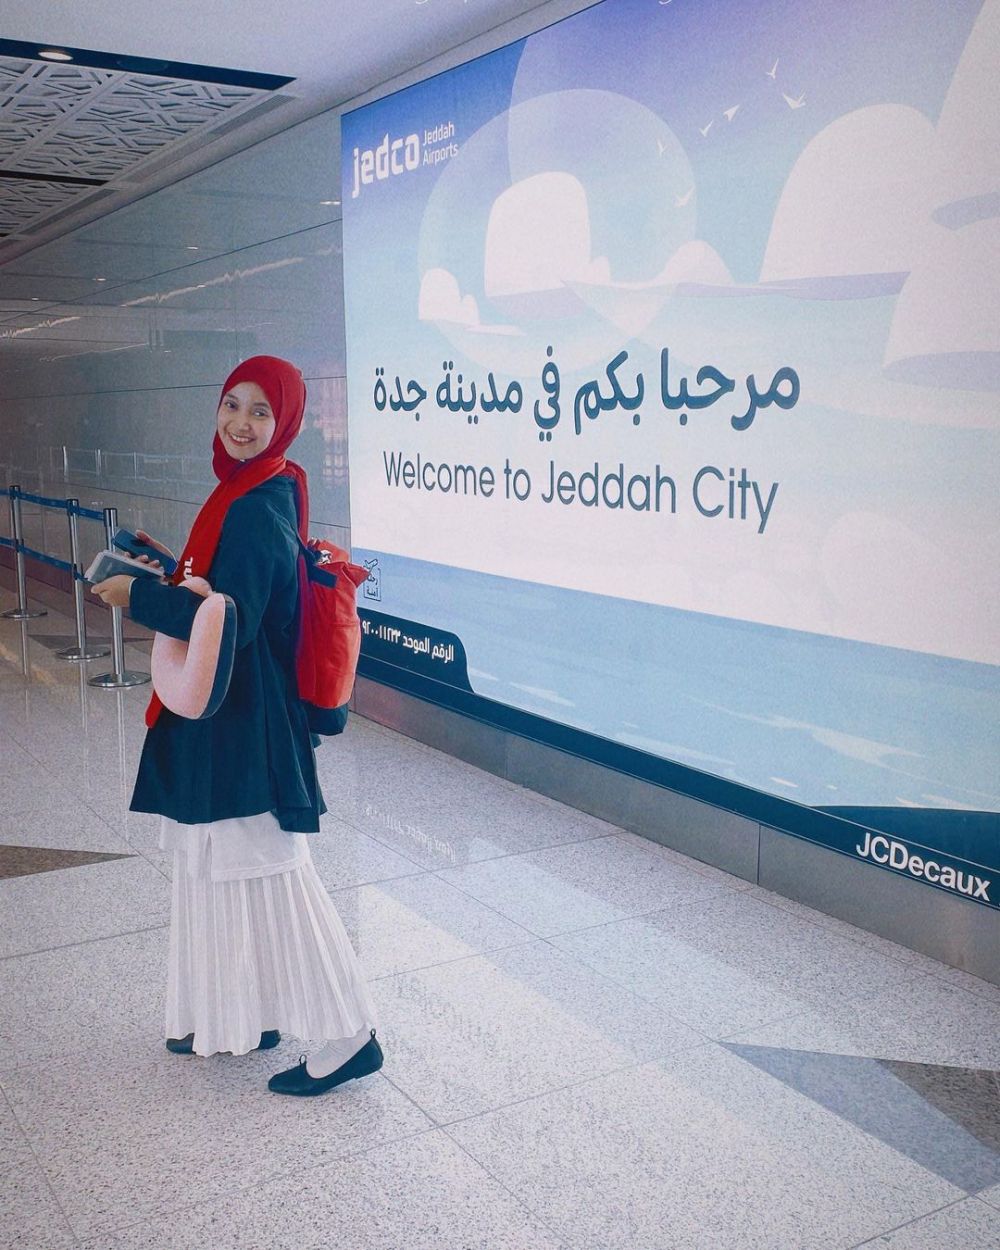 Windy di Tukang Ojek Pengkolan kini aktif jadi presenter, intip 11 potretnya tampil beda pakai hijab